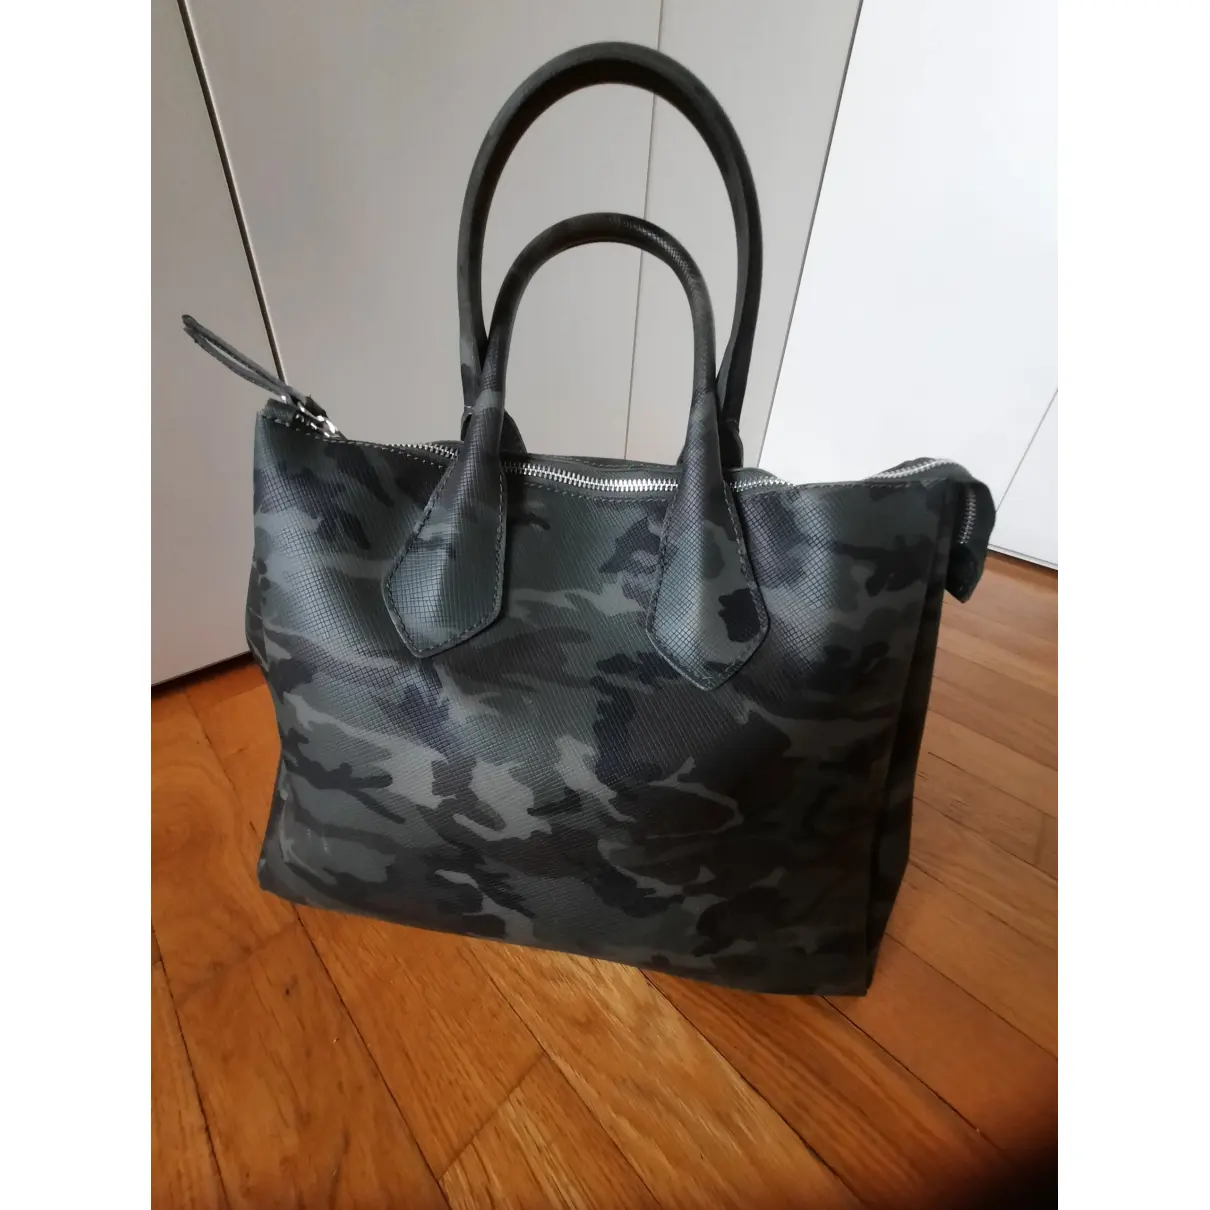 Buy Gianni Chiarini Handbag online